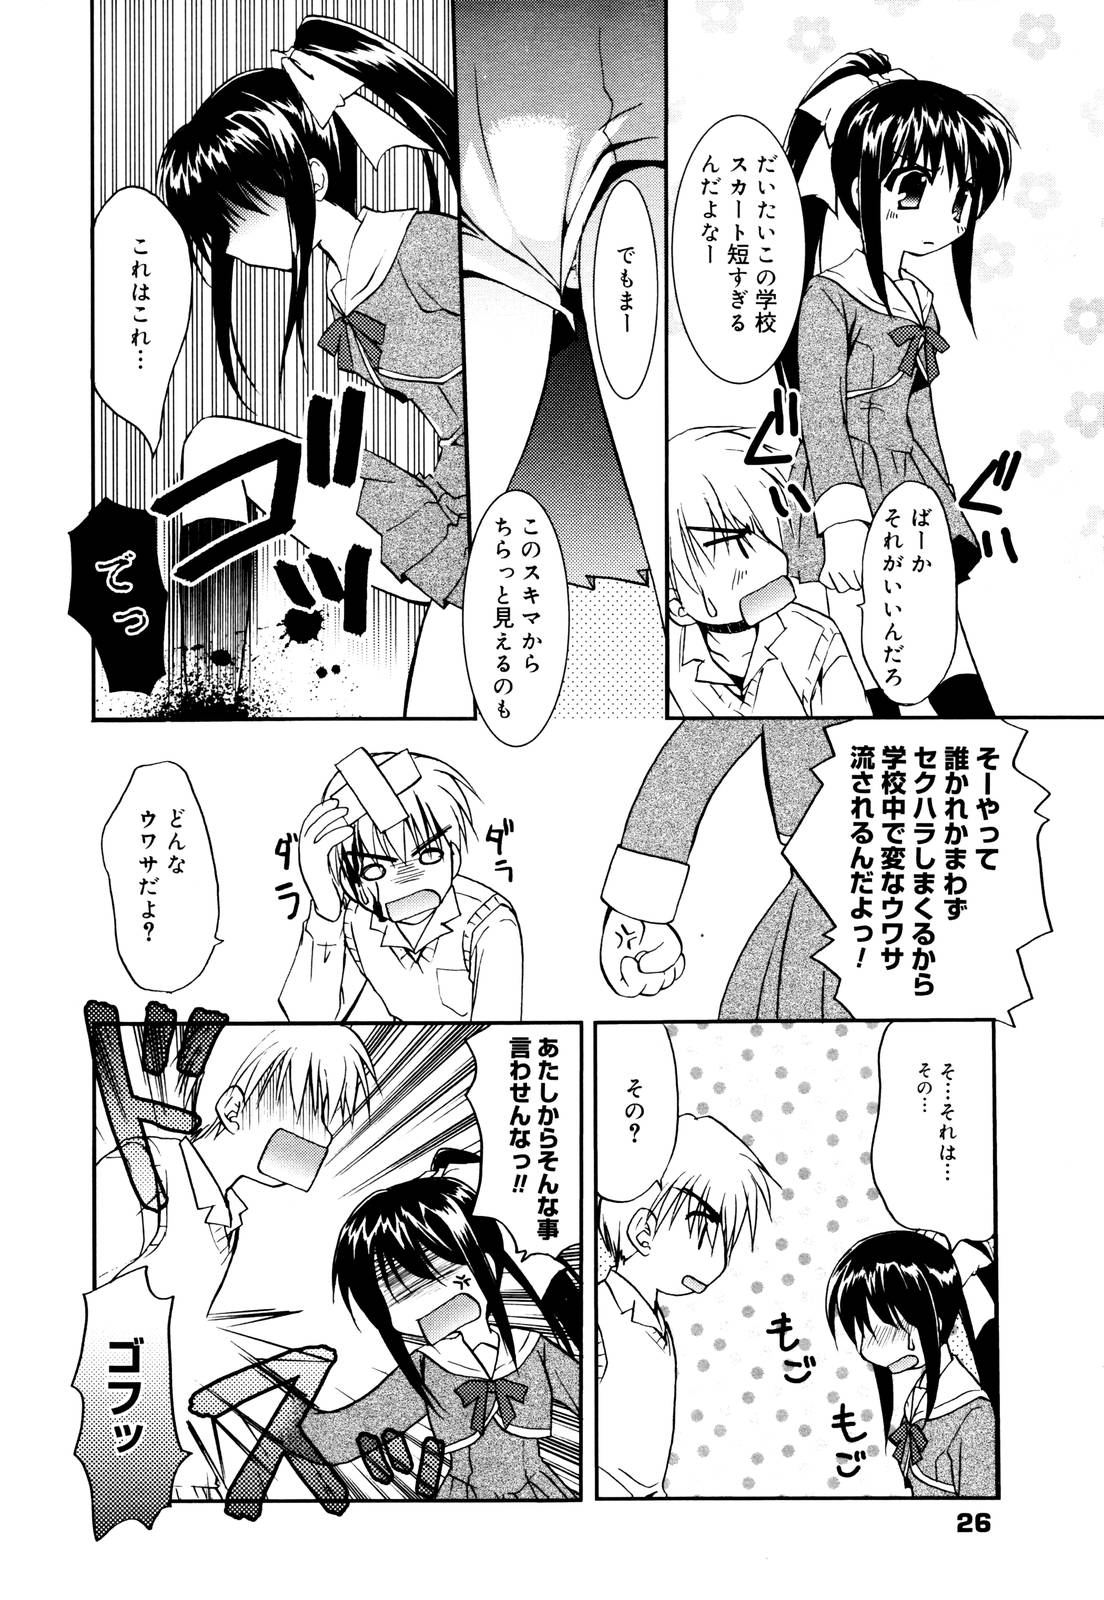 Manga Bangaichi 2006-01 page 26 full